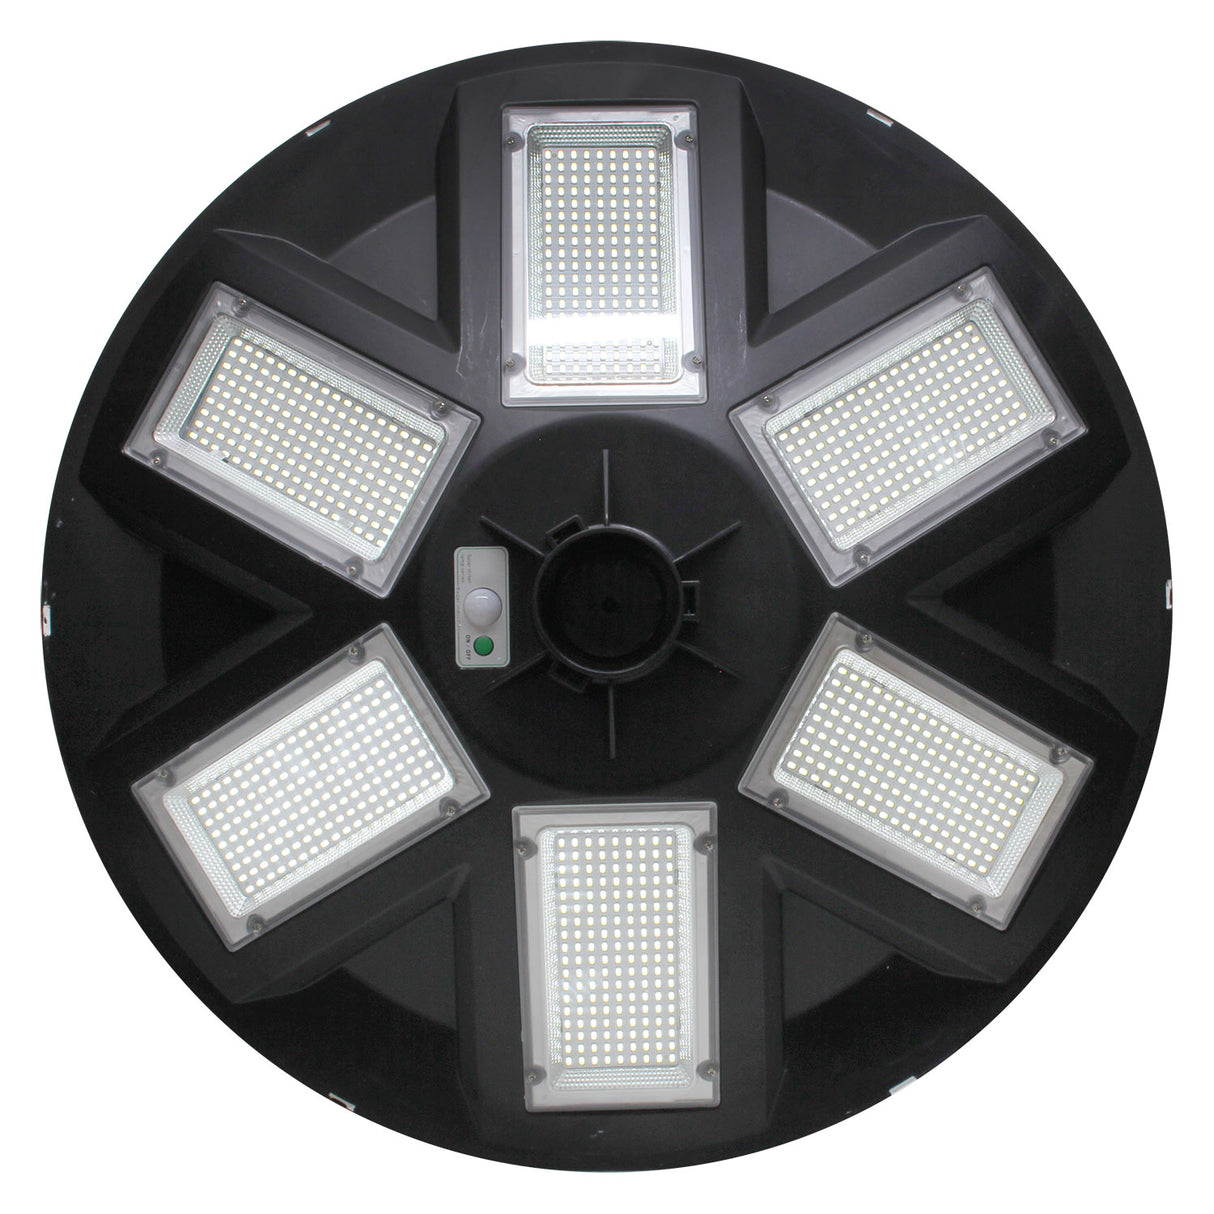 Farola LED que incorpora un sistema de alumbrado autónomo mediante energía solar. Incorpora sensor de luminosidad y movimiento. Ideal para su instalación donde la red de energía eléctrica no puede llegar. Incluye mando a distancia para su control y configuración.